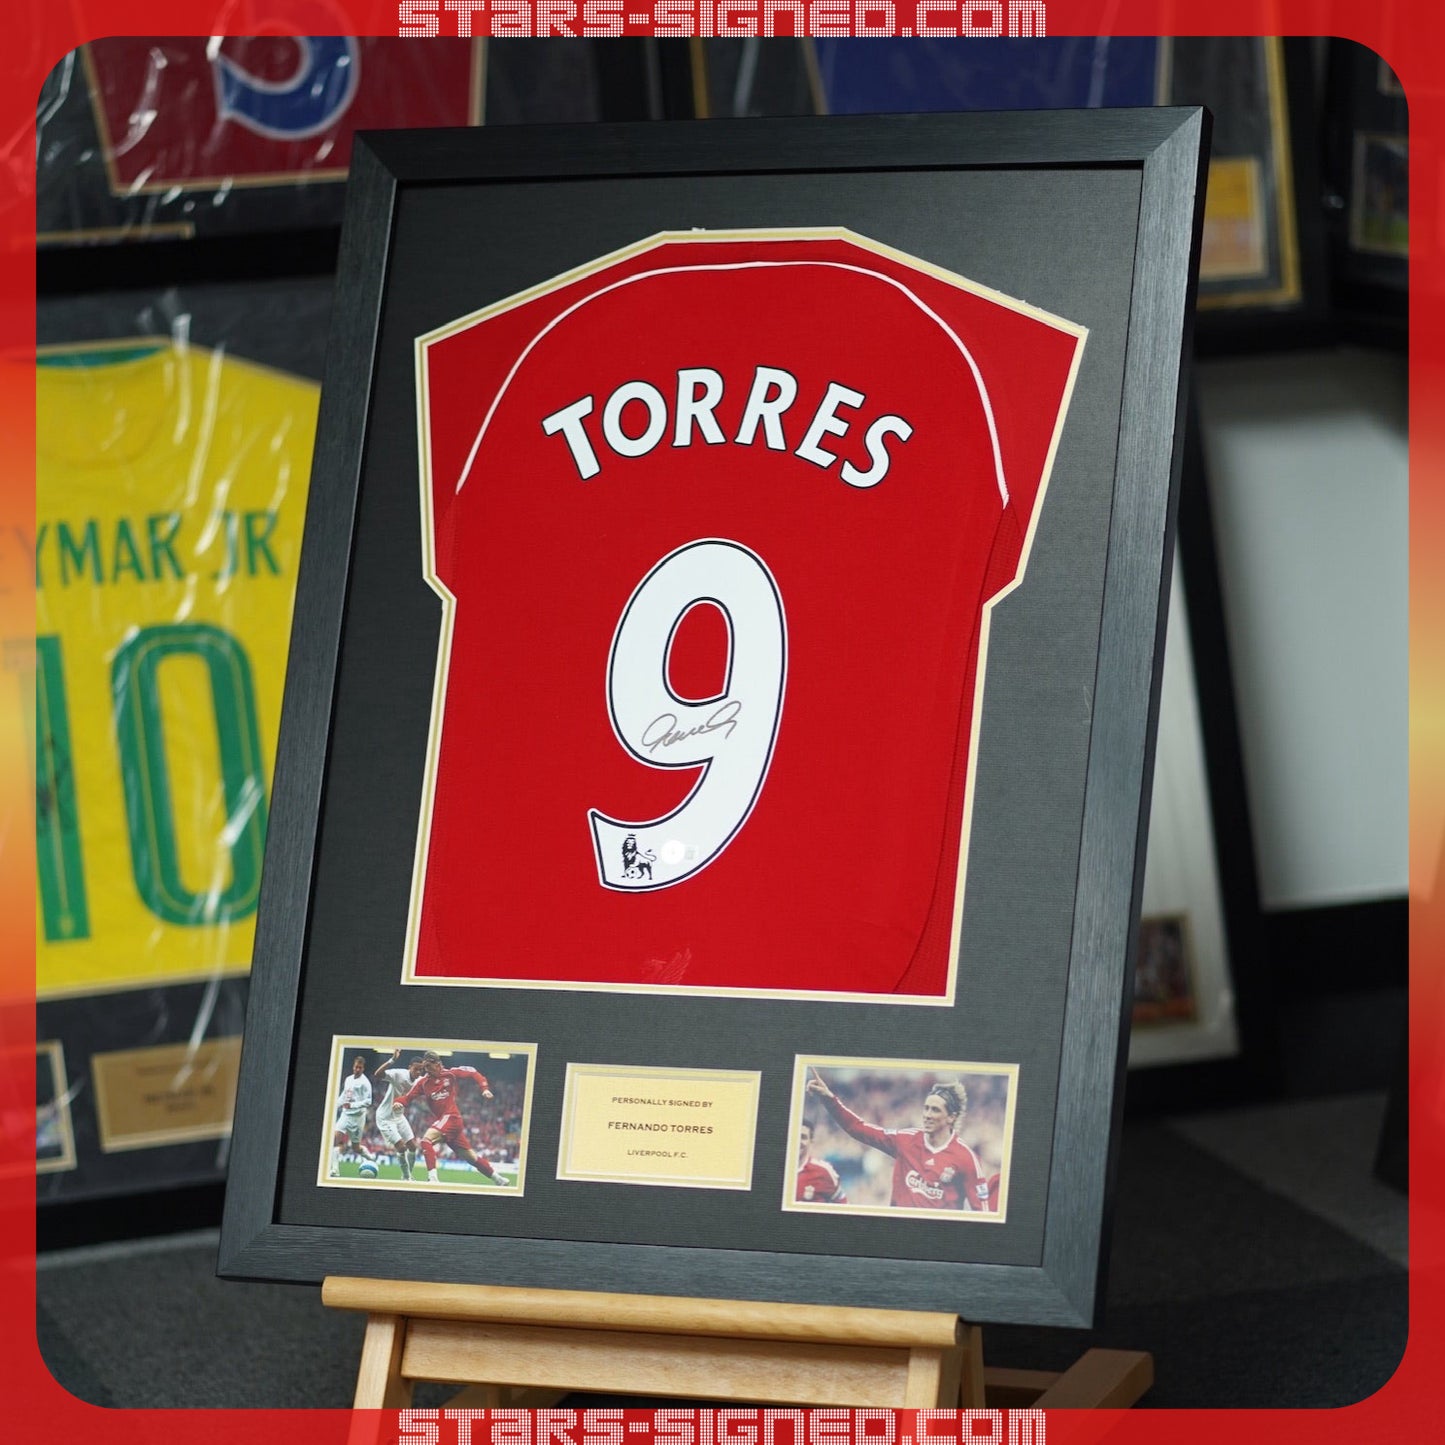 費蘭度·托利斯 Fernando Torres 利物浦 主場球衣裱框(背簽)